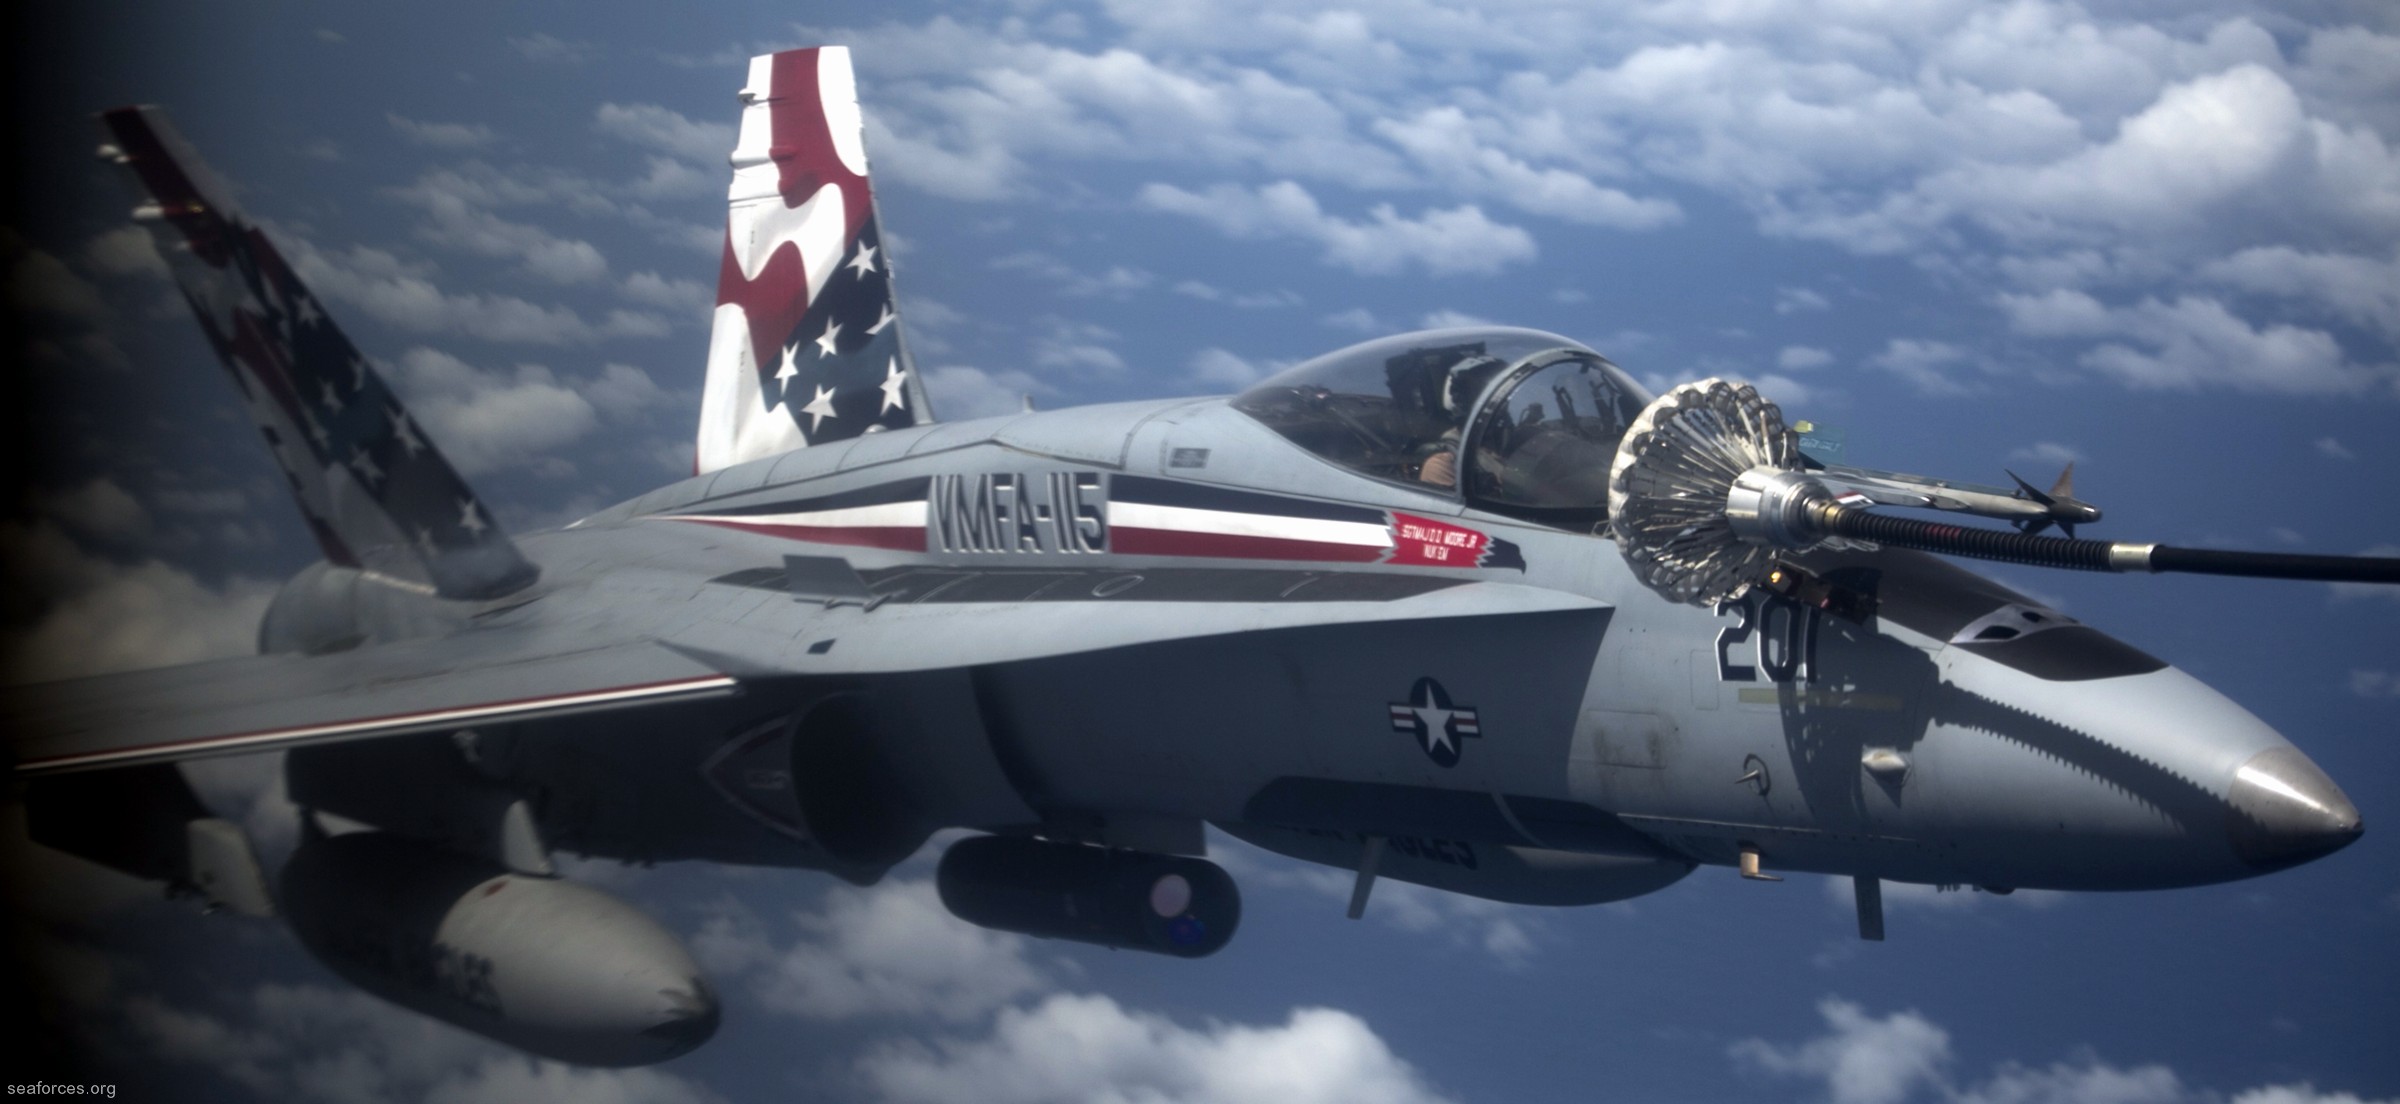 vmfa-115 silver eagles marine fighter attack squadron f/a-18a+ hornet 137 guam